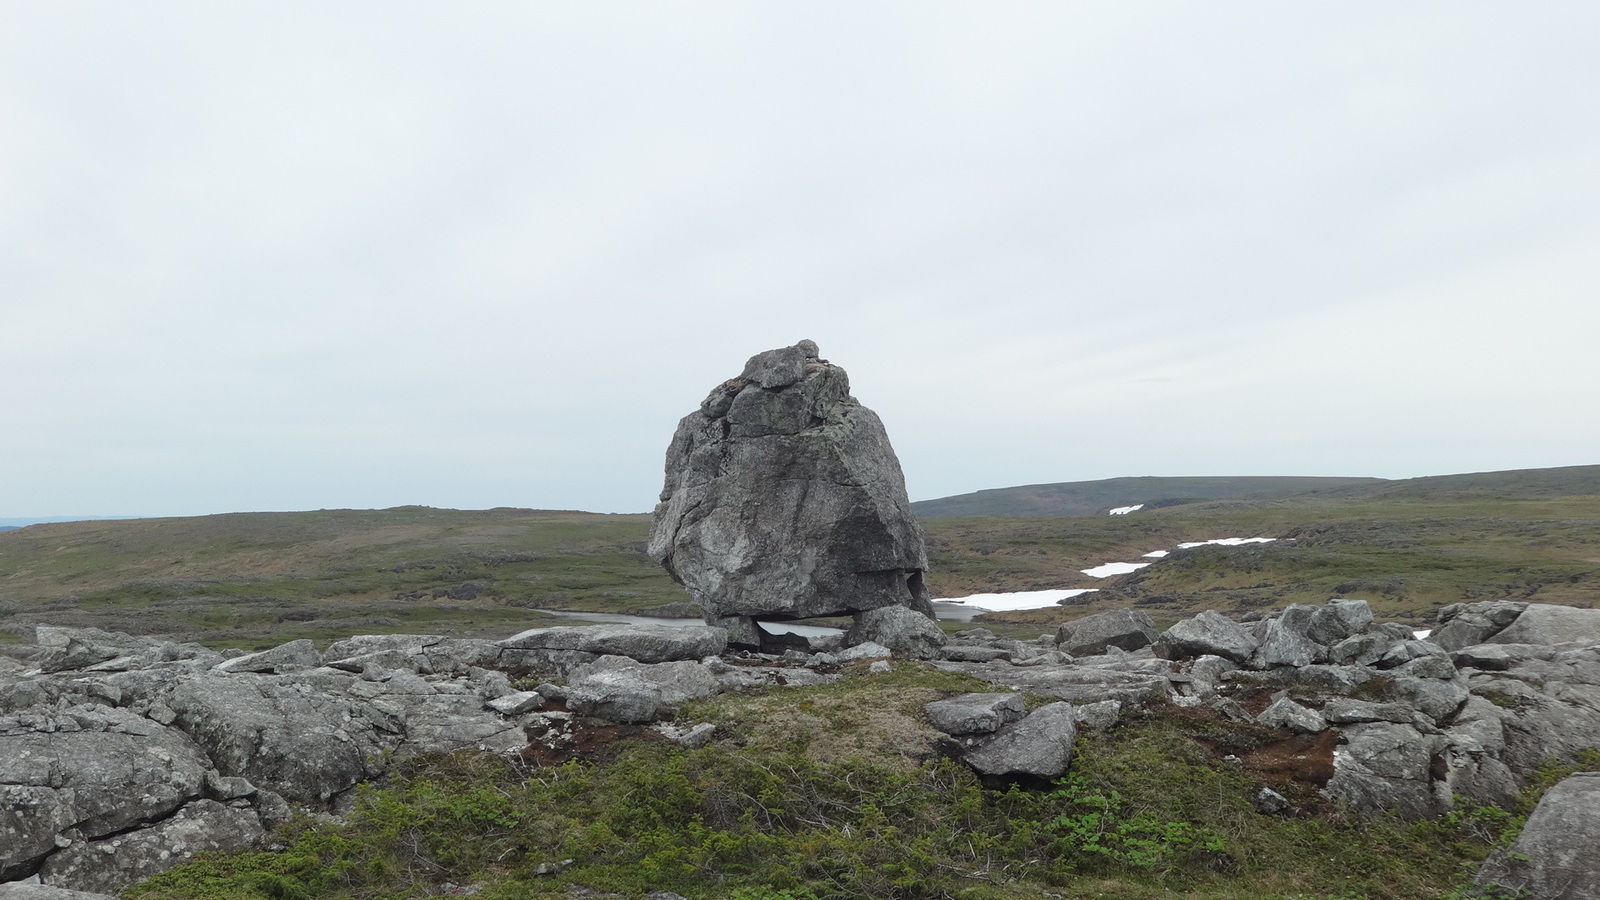 Un roc déposé sur 4 pierres